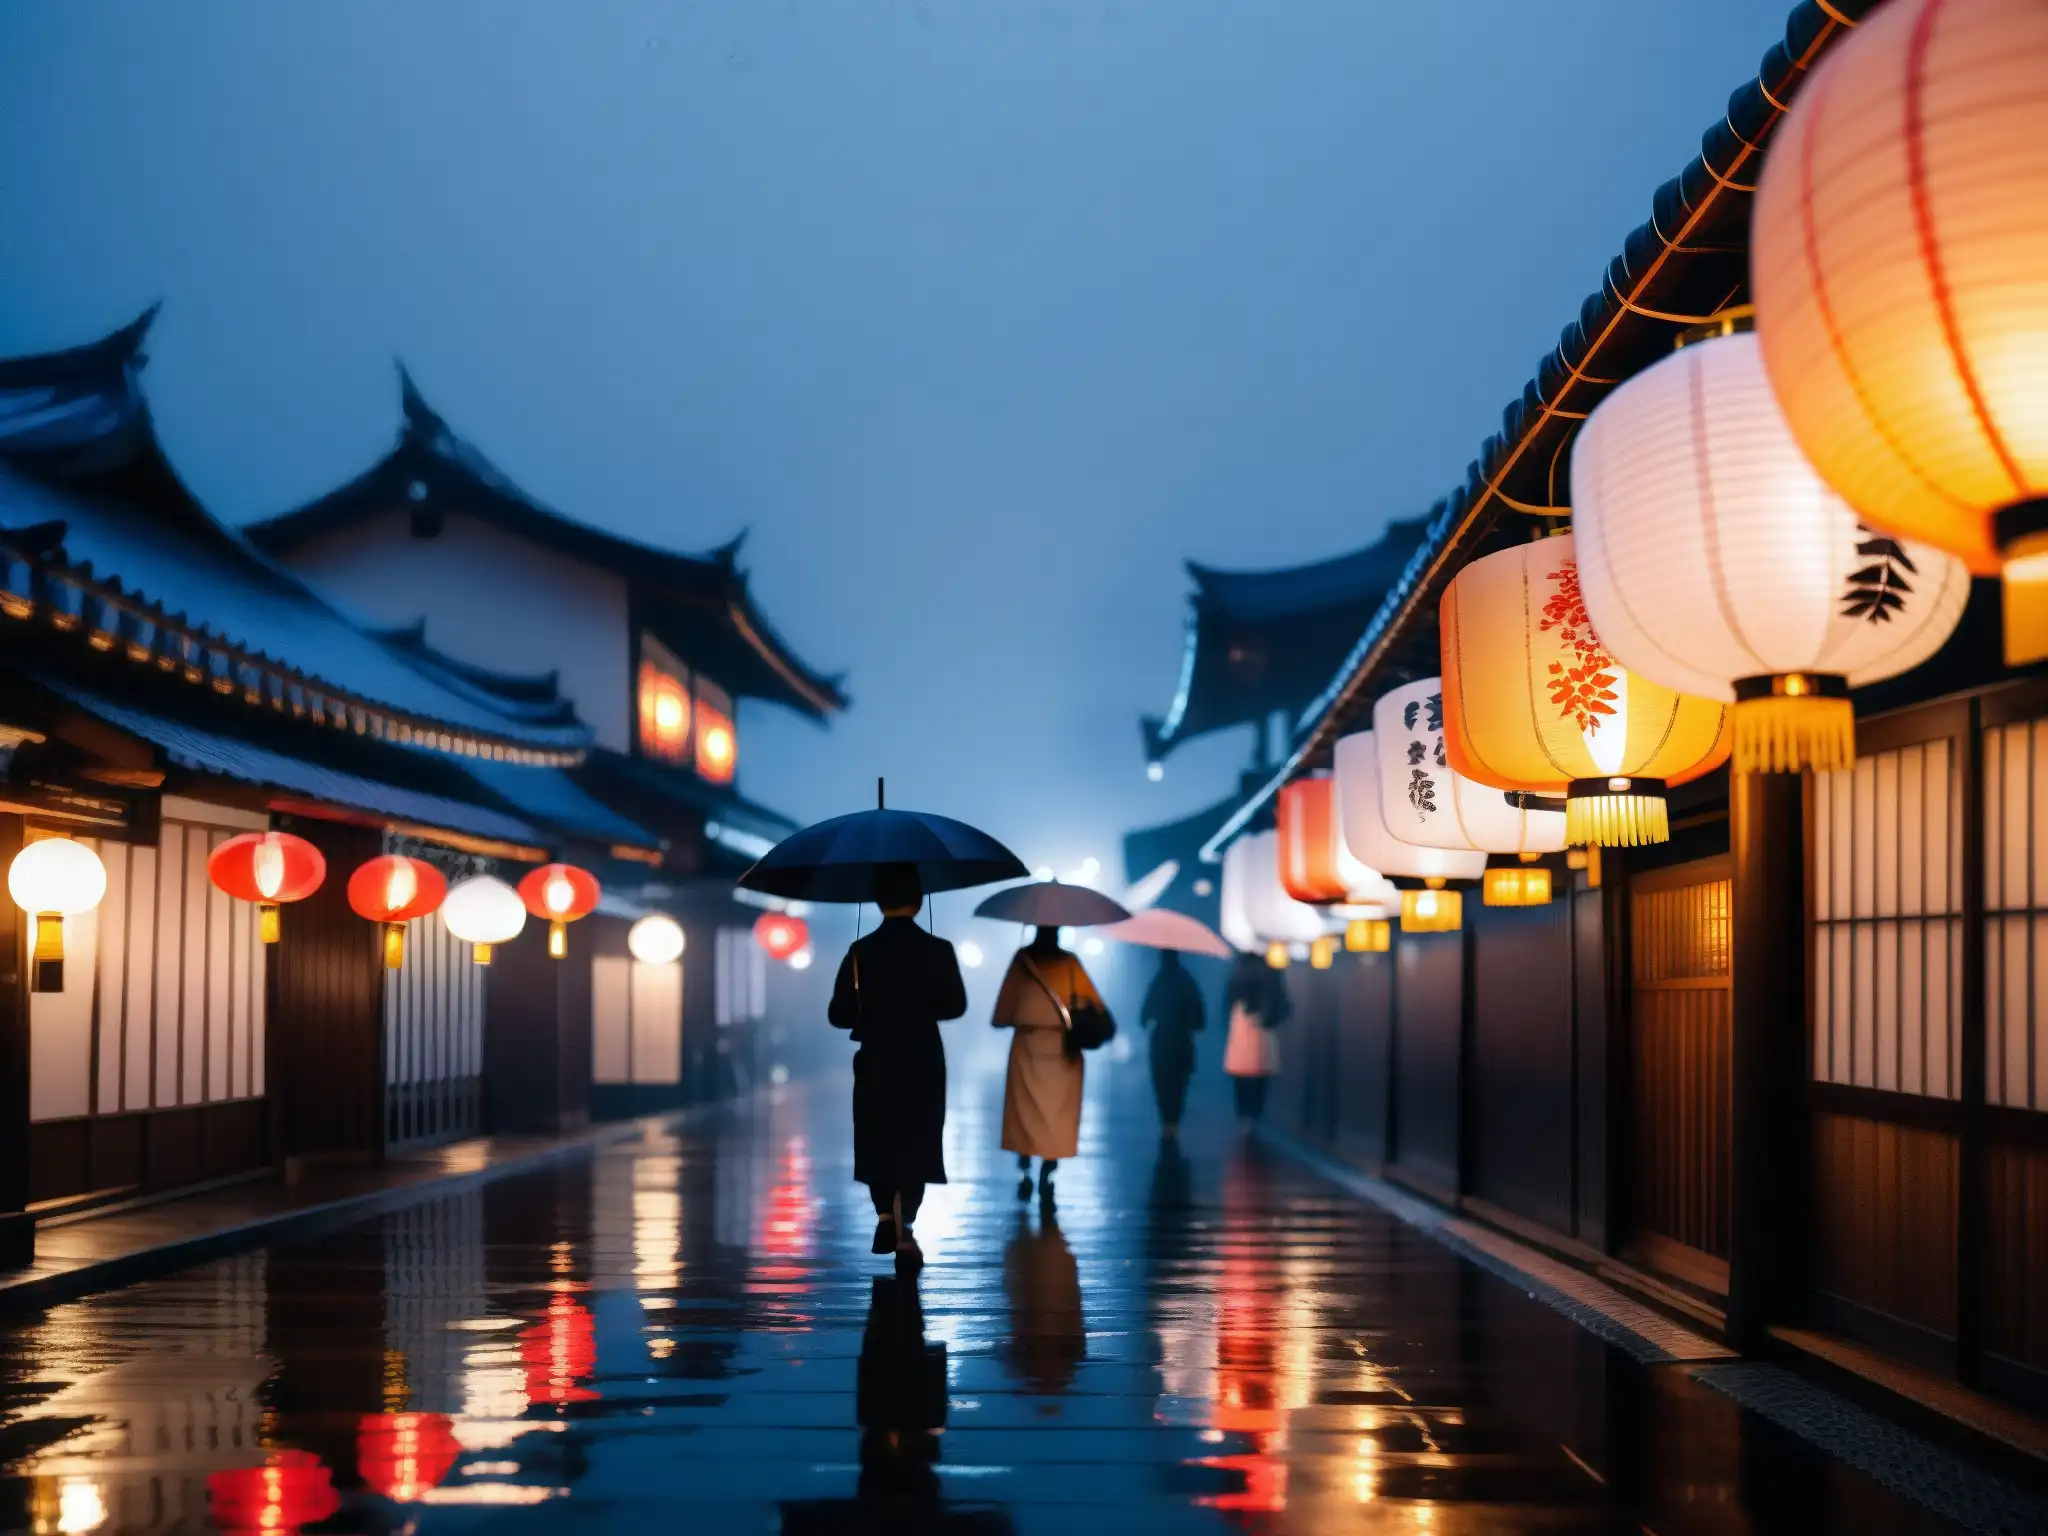 Una calle japonesa tradicional en una noche lluviosa con paraguas y linternas de papel